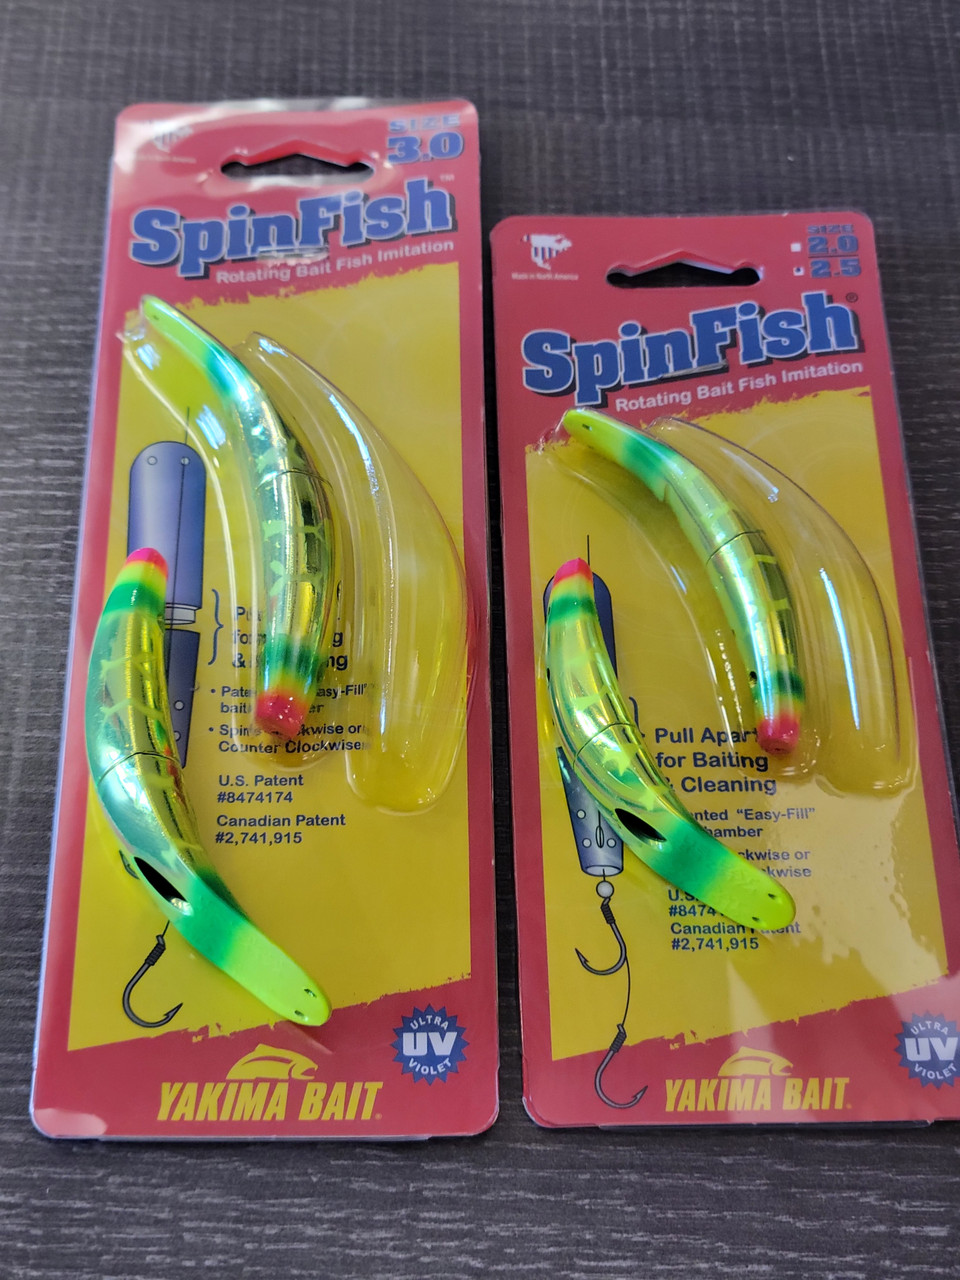 New SpinFish Sizes from Yakima Bait